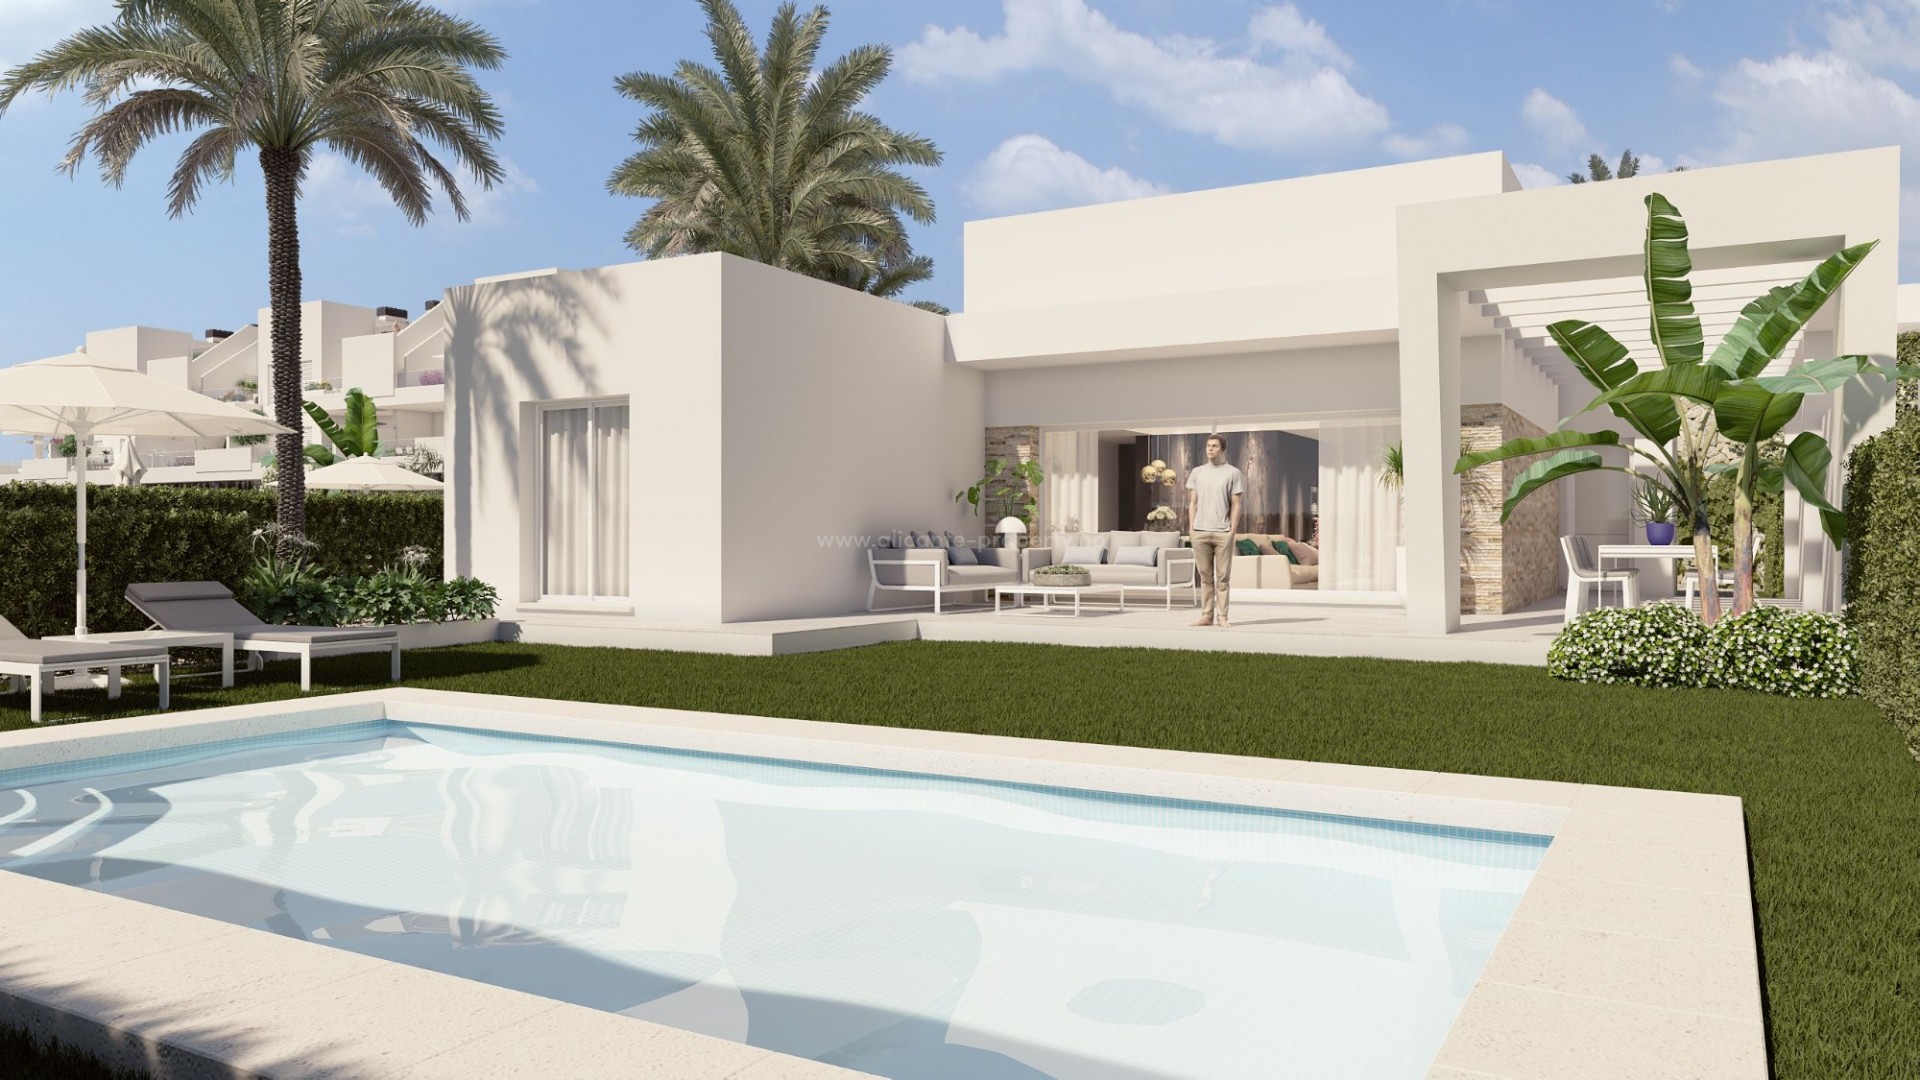 Helt nye imponerende villaer/hus i La Finca Golf, 3 soverom og 2 bad, hage med privat svømmebasseng, uteområde på stor terrasse